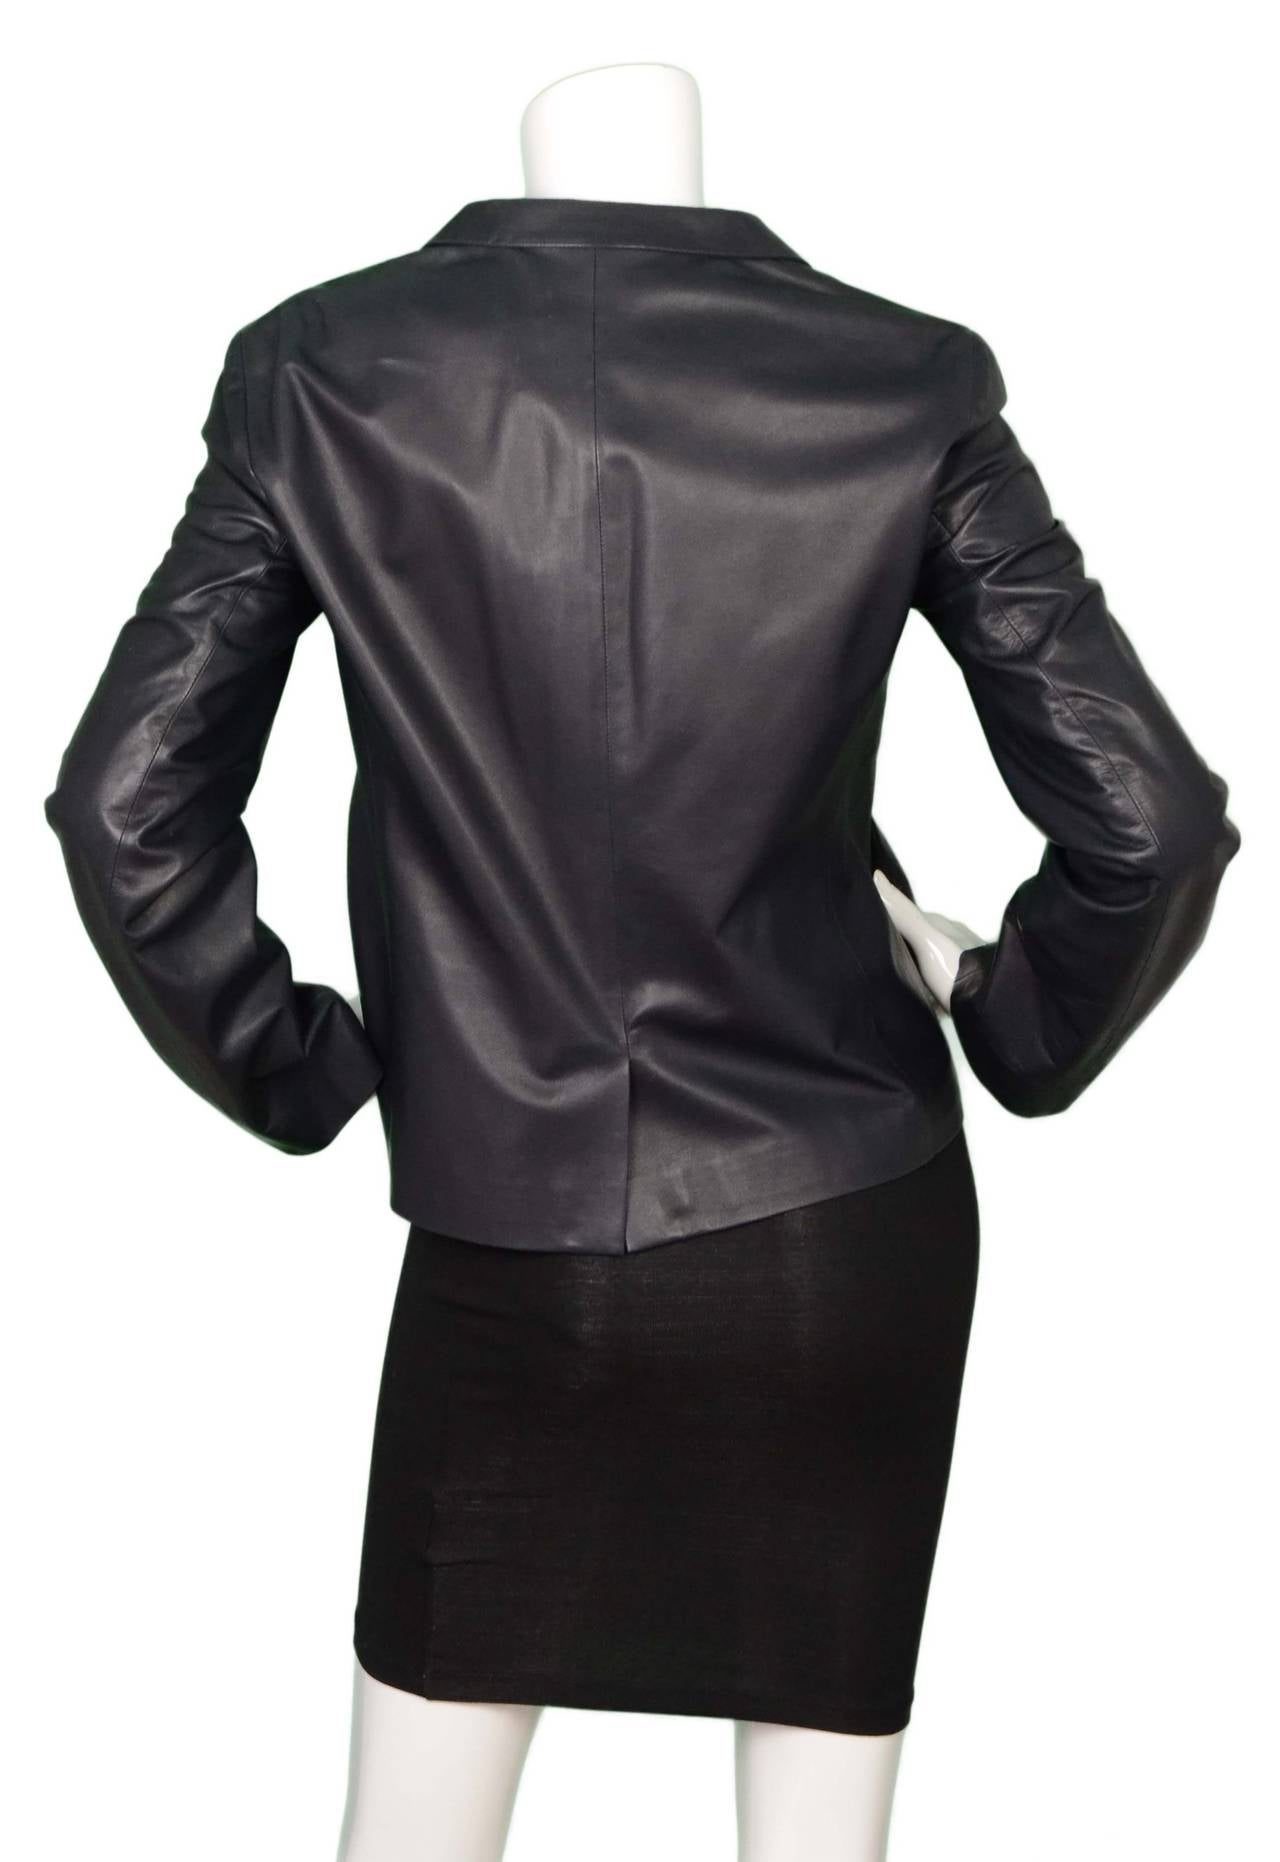 Women's Jil Sander Black Leather Jacket sz 38